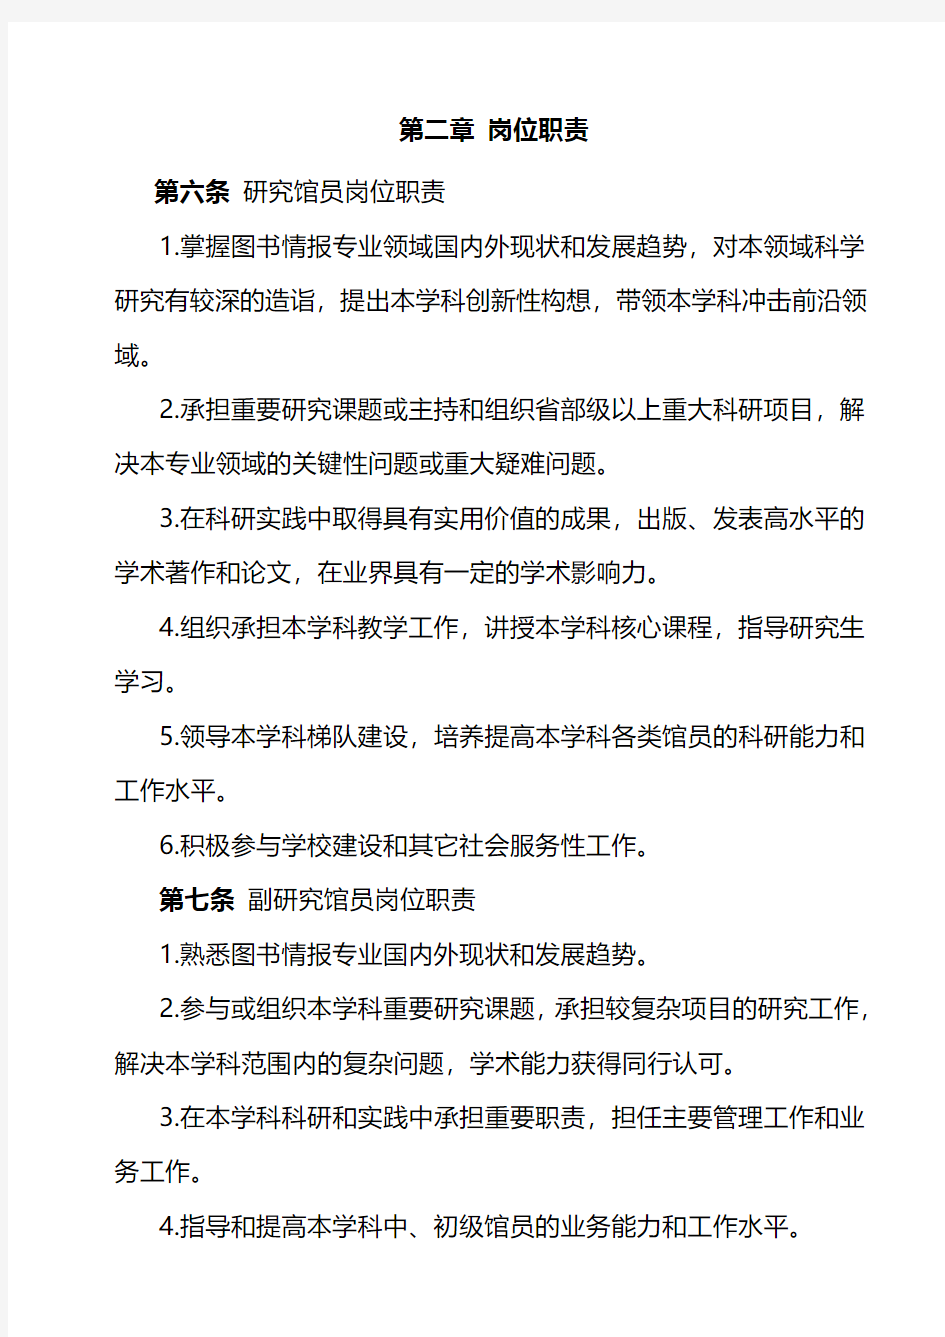 上海交通大学图书系列职务聘任实施办法